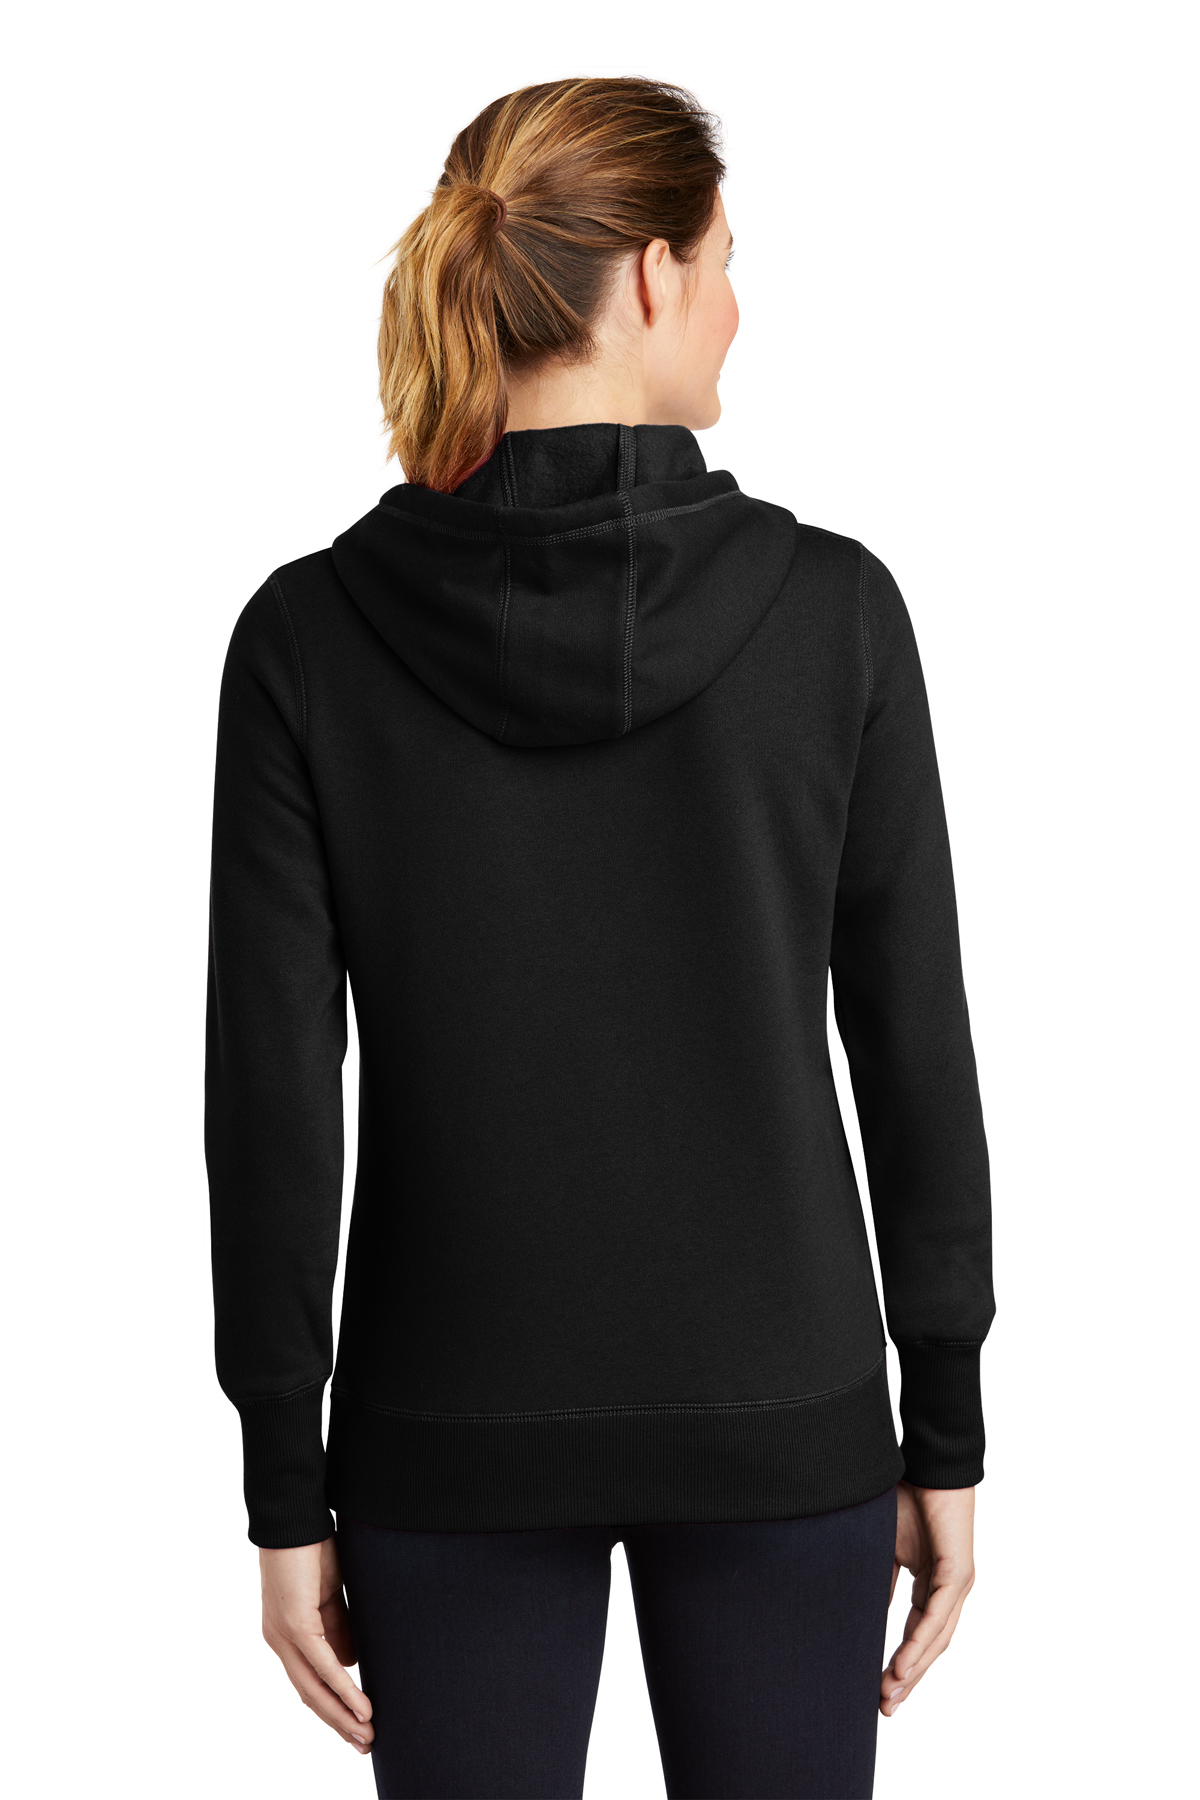 Hooded Product Pullover | Ladies Sweatshirt | Sport-Tek Sport-Tek